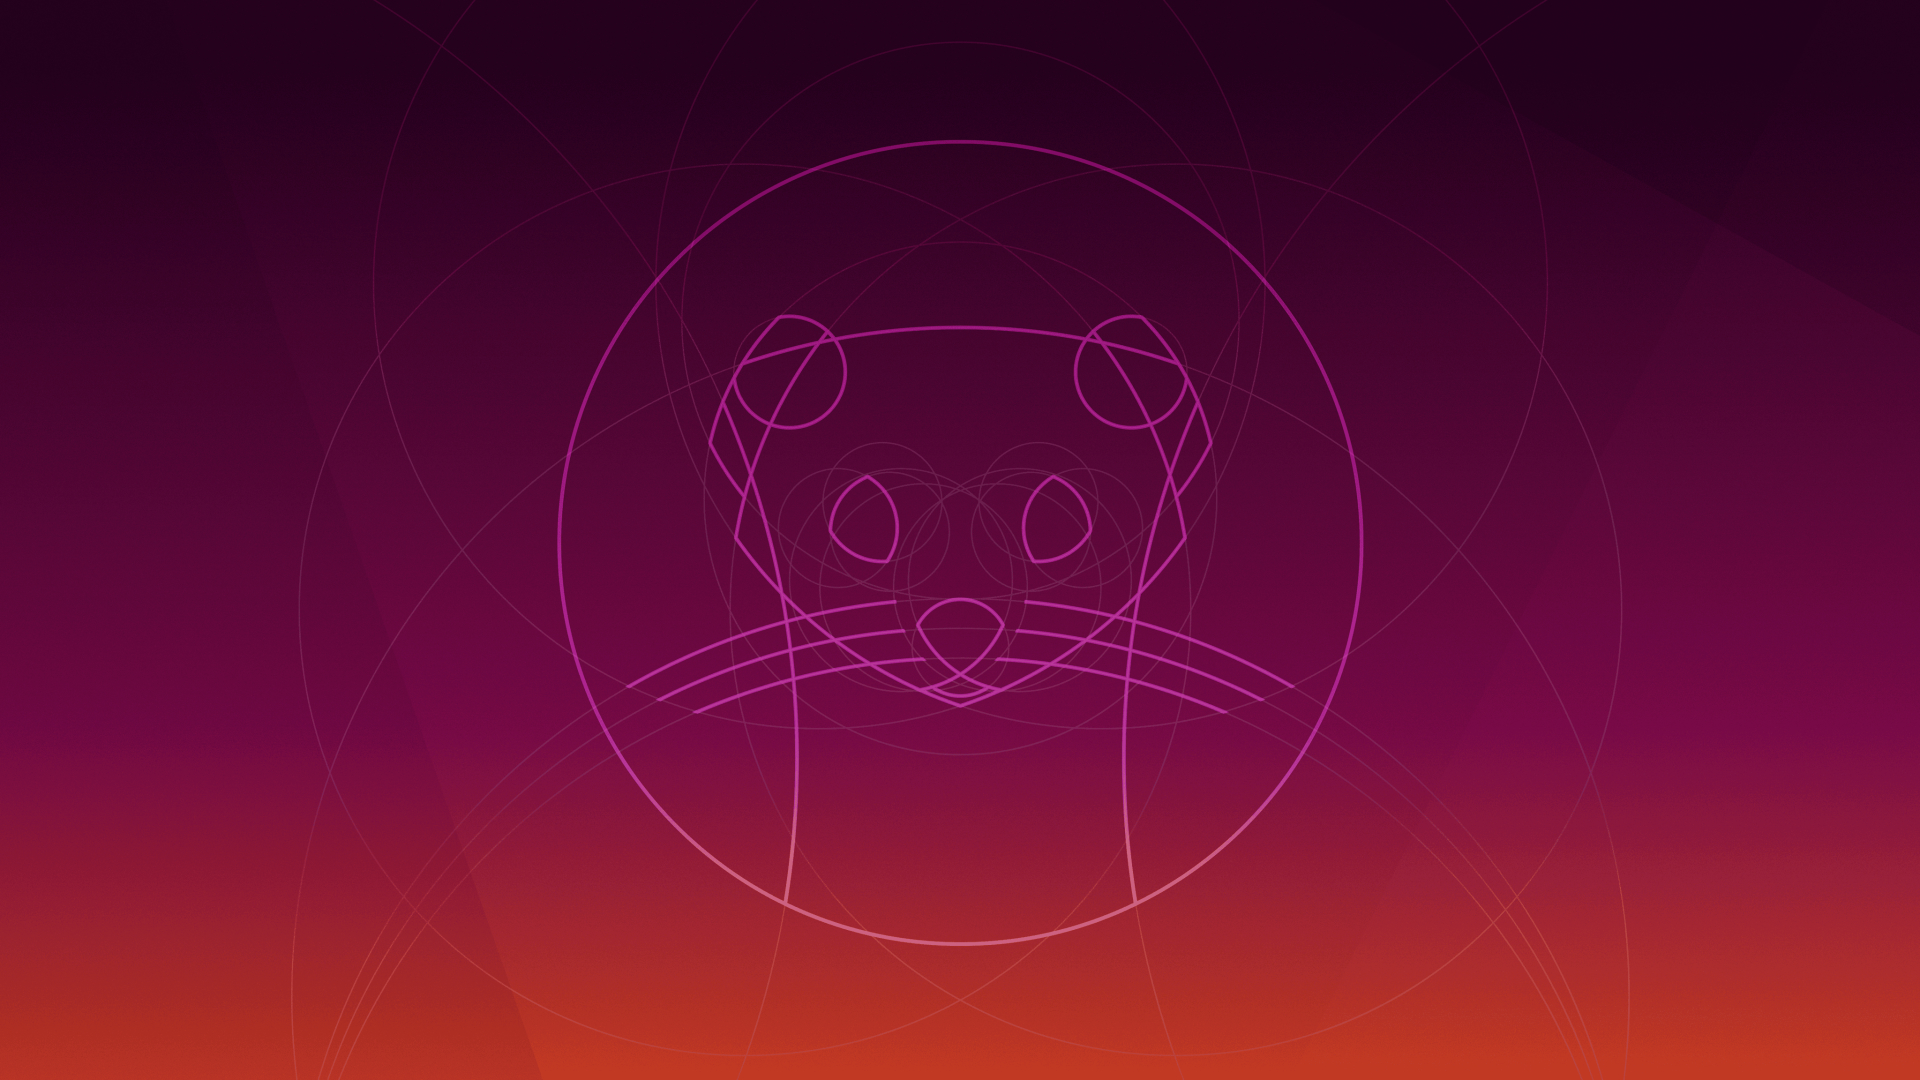 ubuntu wallpaper download,red,purple,pink,magenta,circle